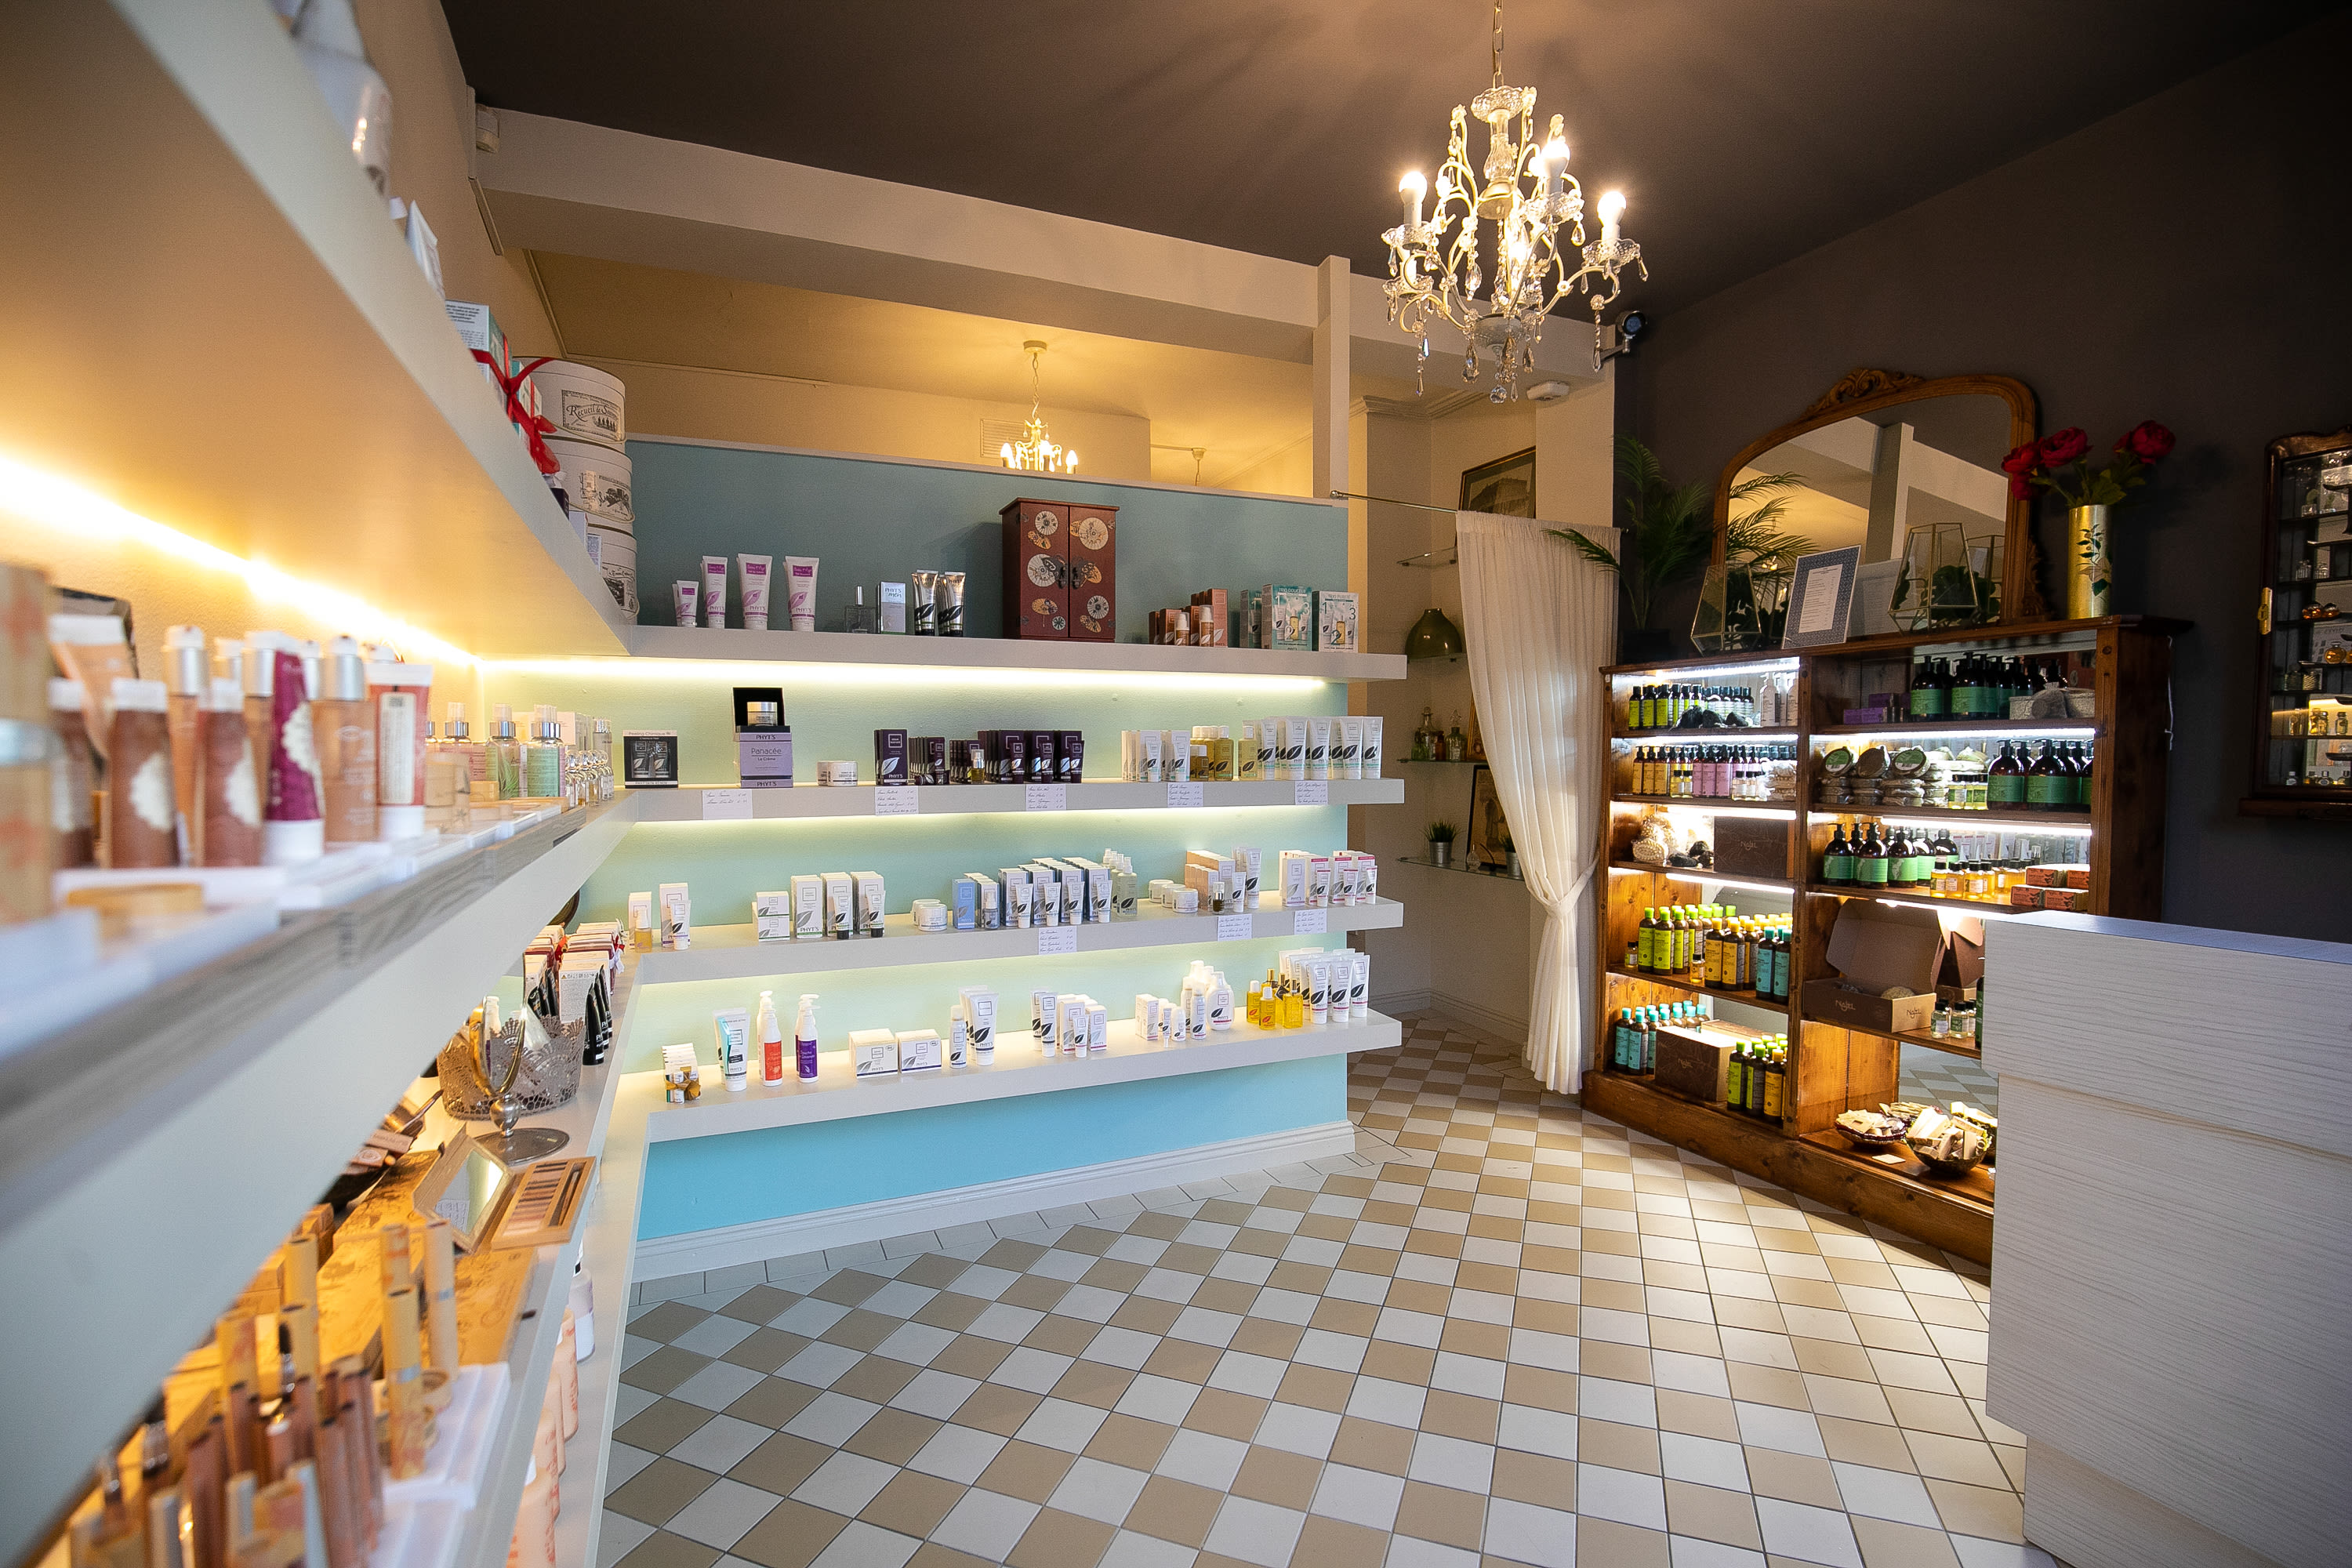 VClaire Natural Beauty Salon & Eco Shop